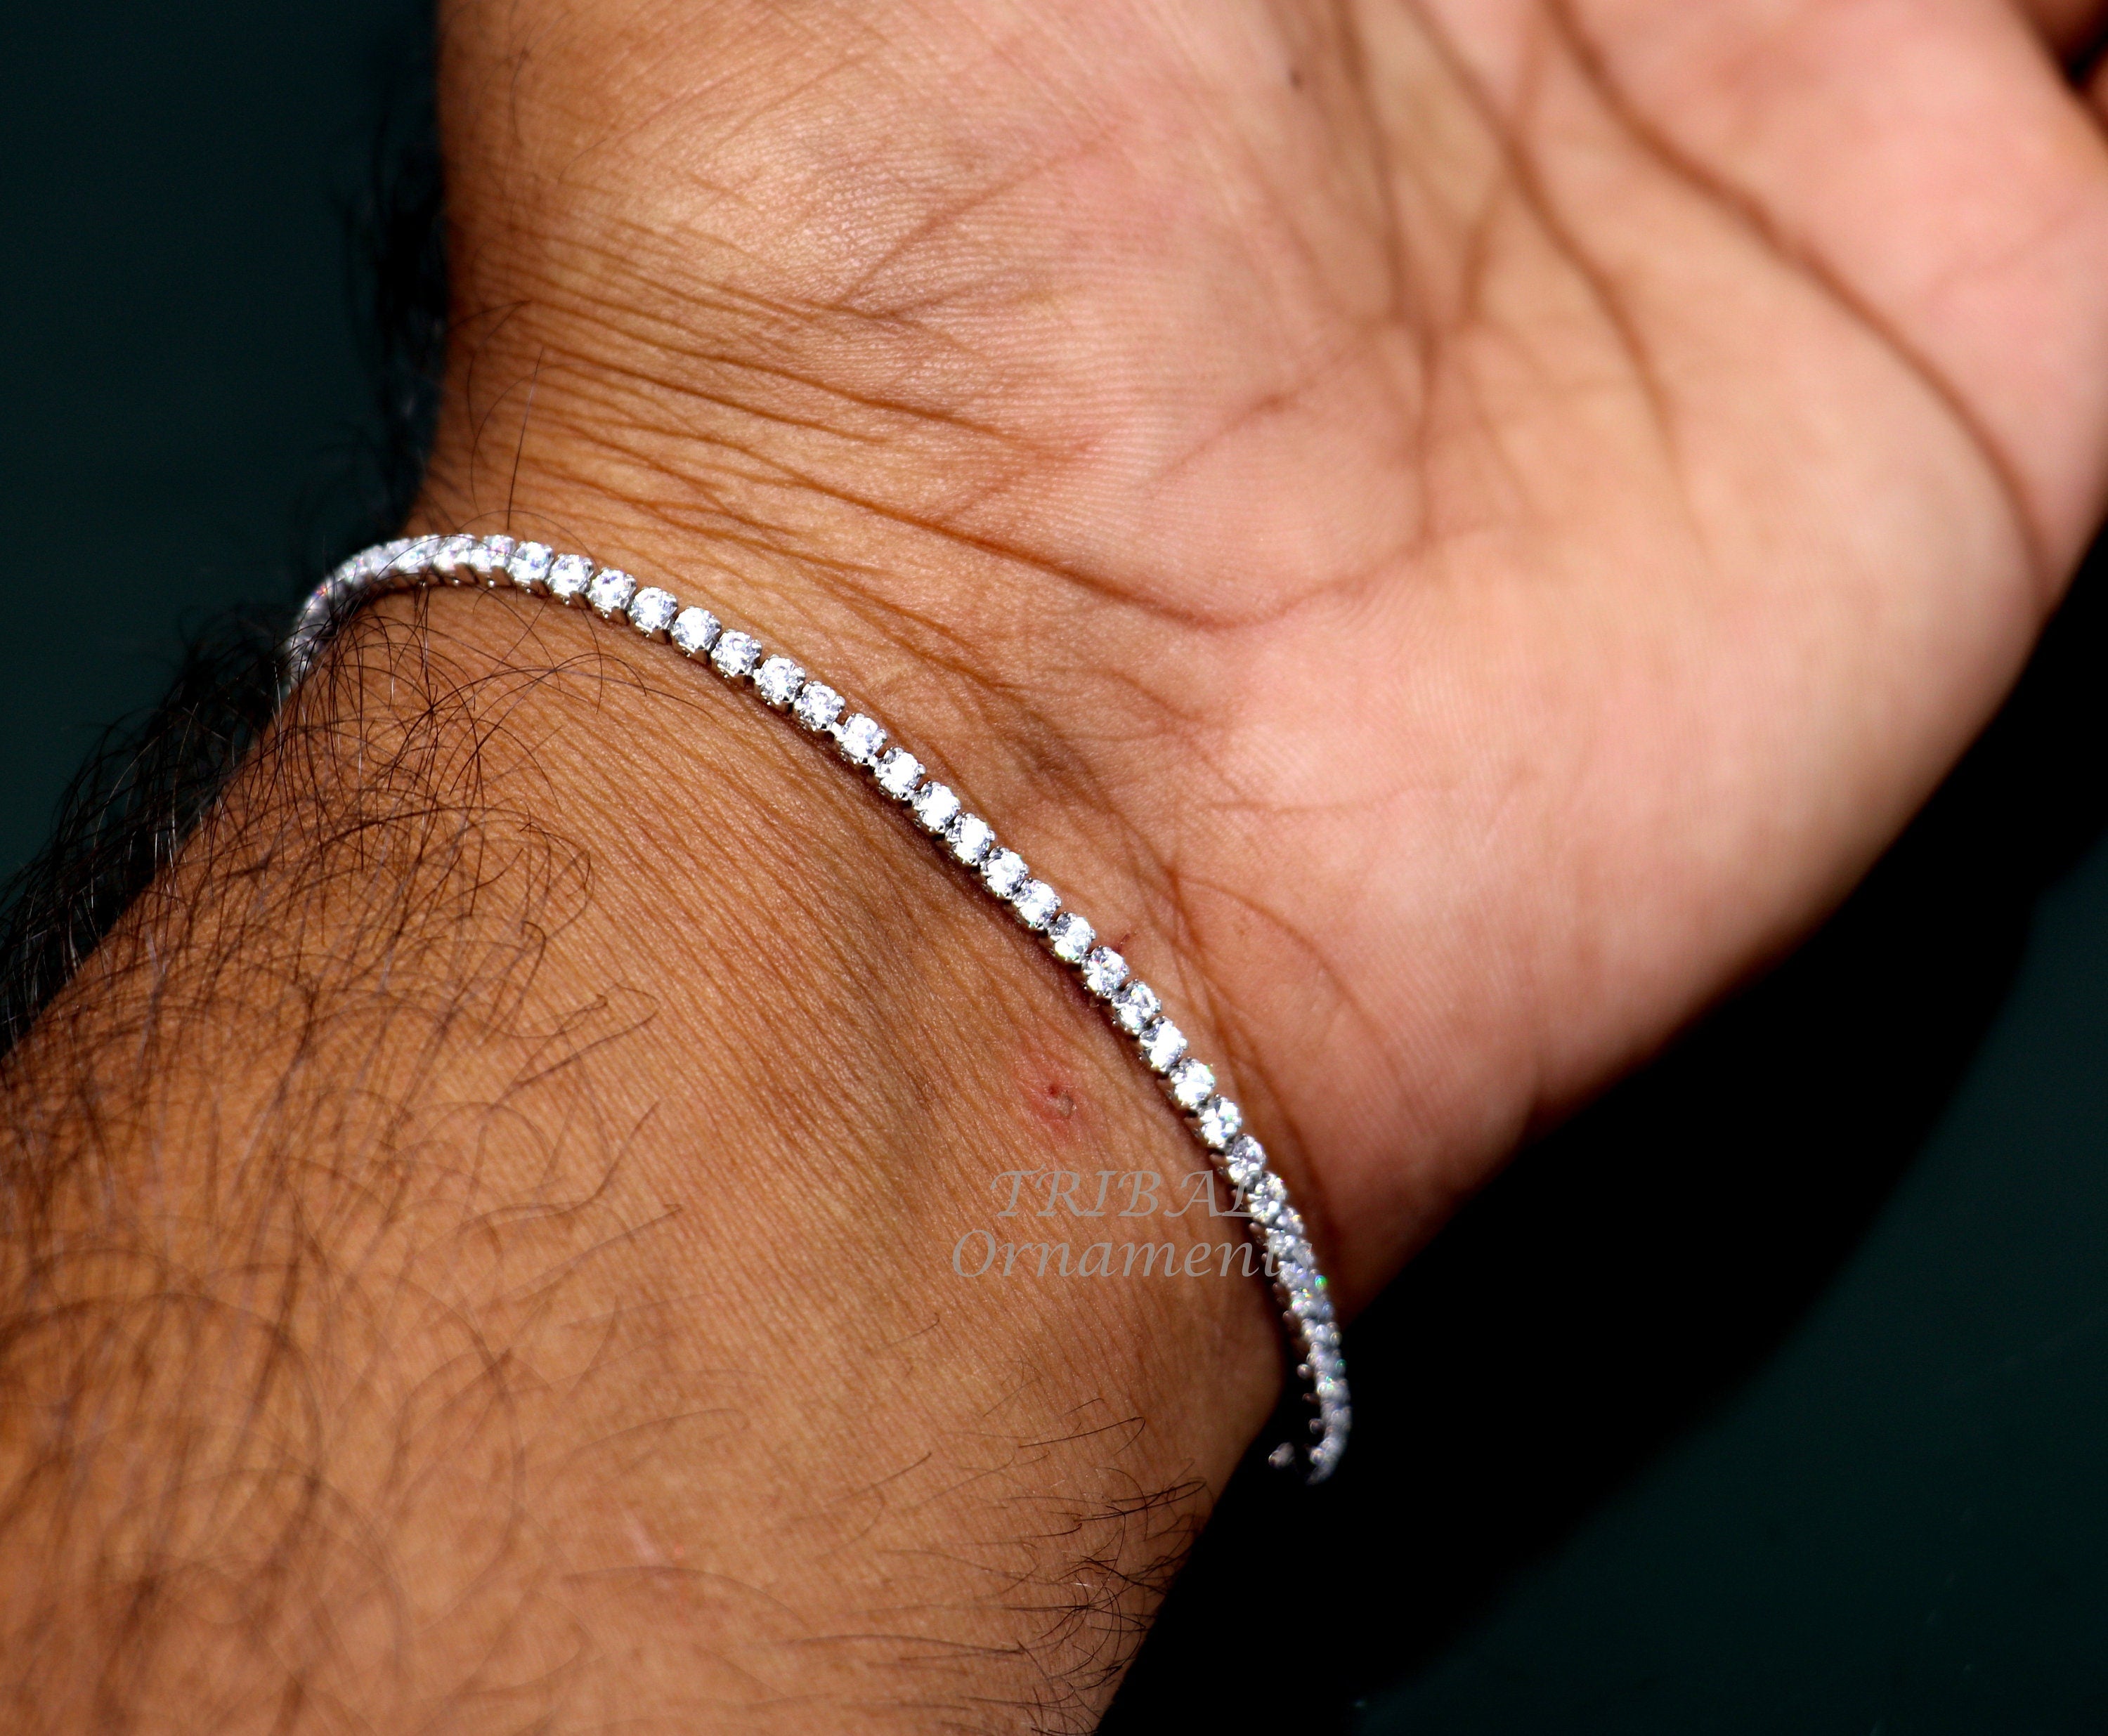 Buy Elprine Elegant heart design Charm Heart Crystal Bracelet for Women  Online @ ₹505 from ShopClues